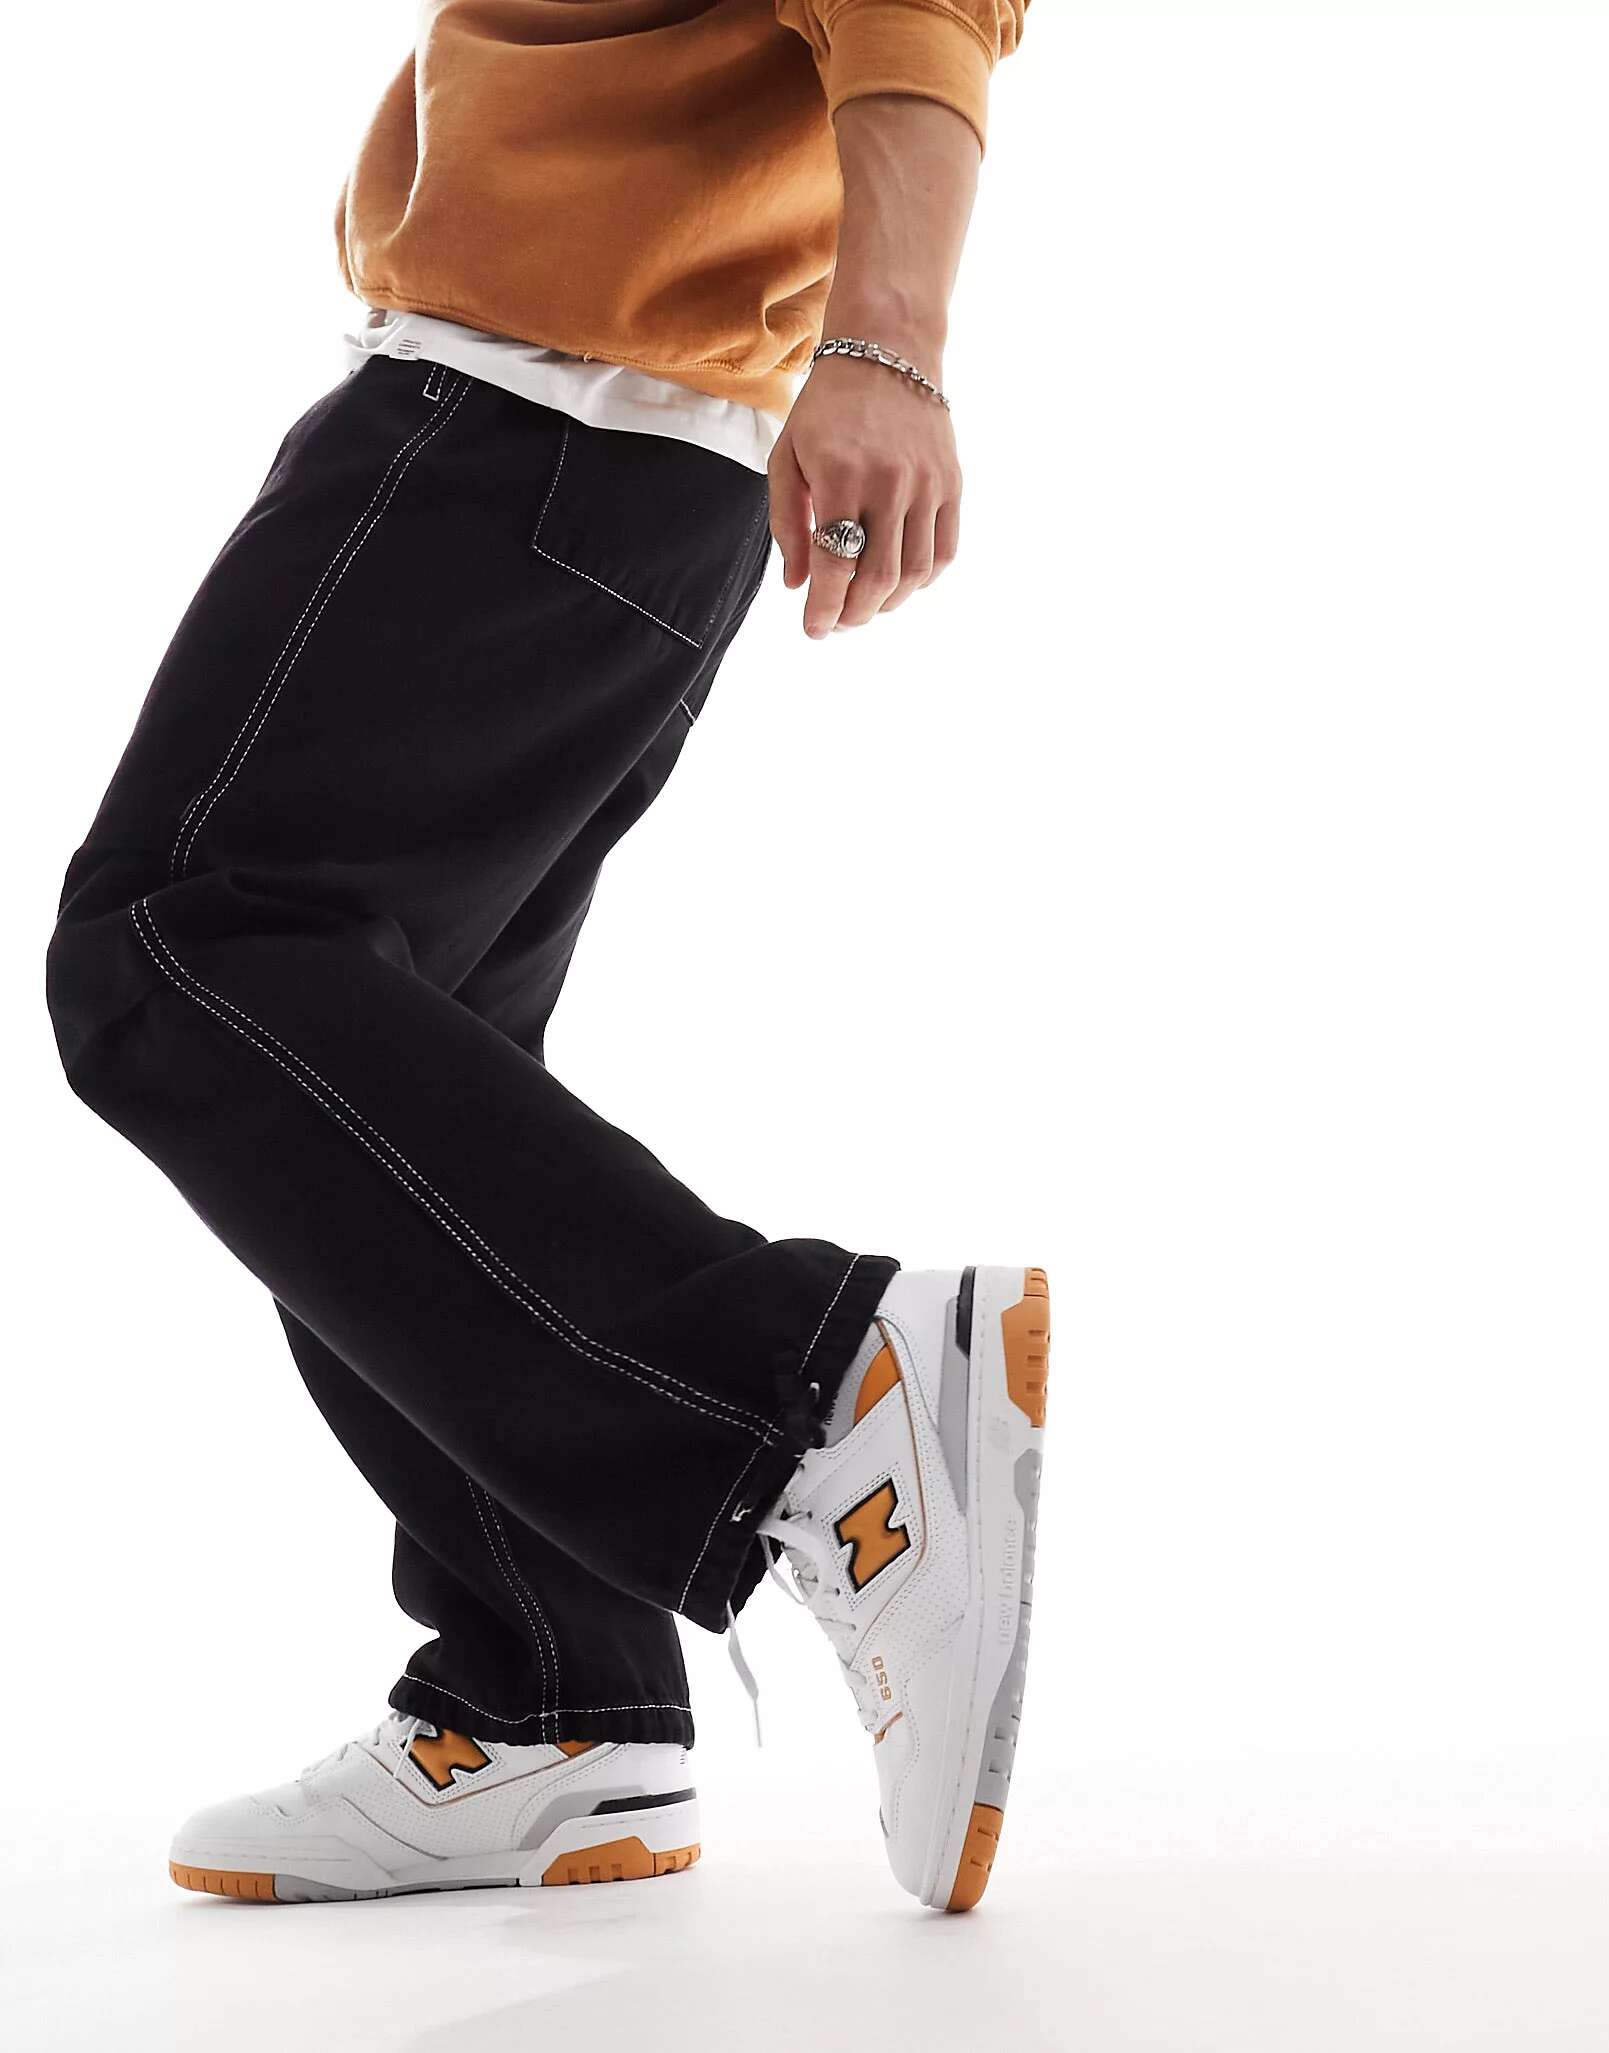 Кроссовки New Balance 650 белого и оранжевого цвета